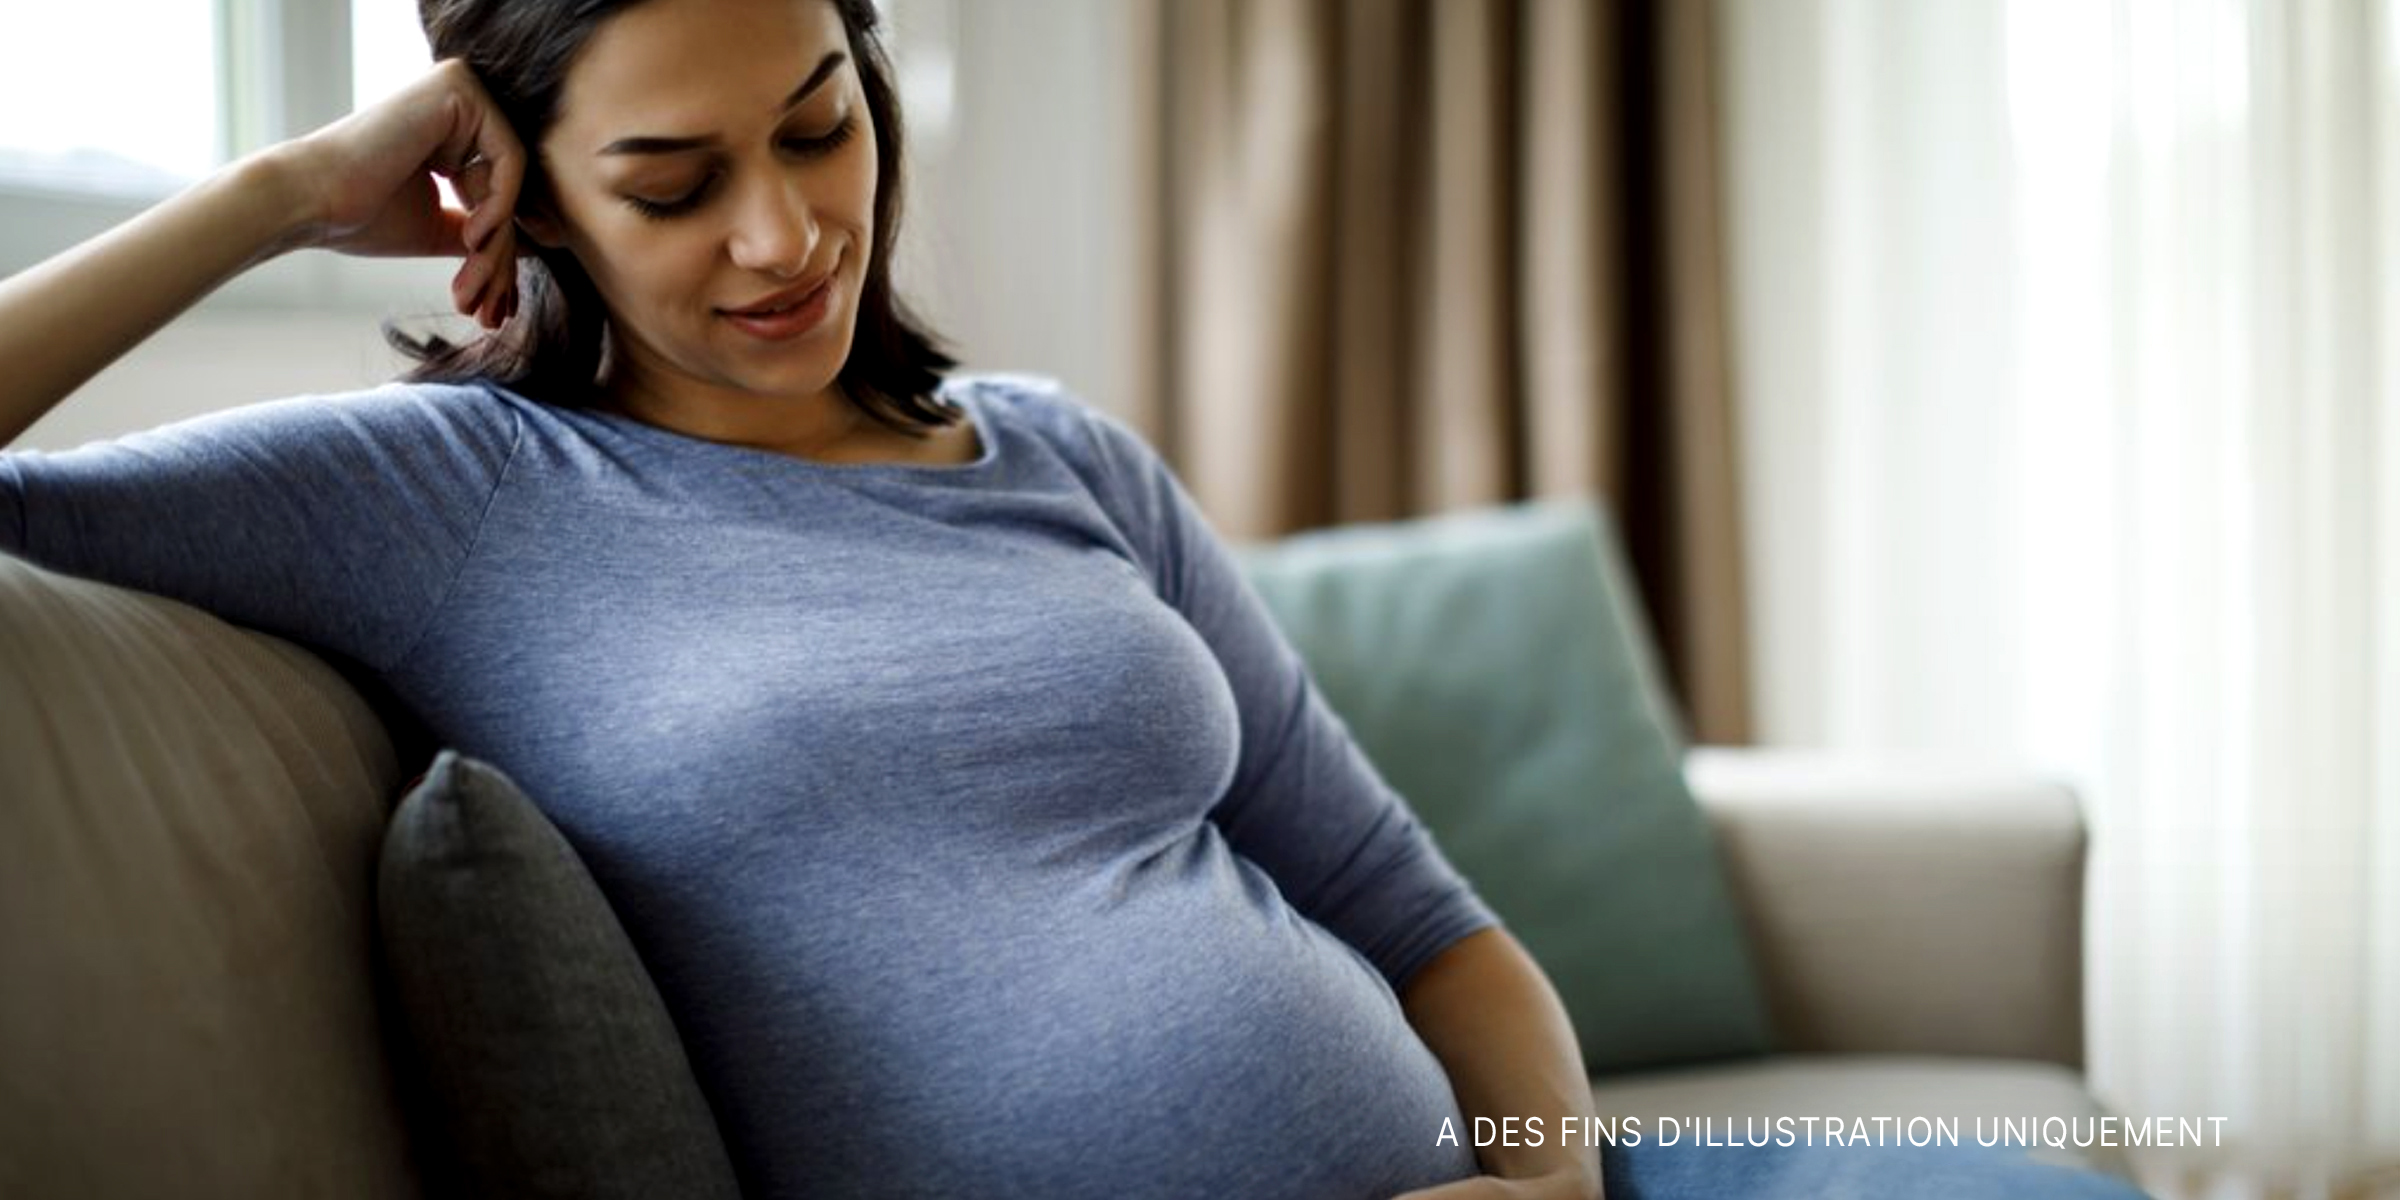 Une femme enceinte | Source : Getty Images